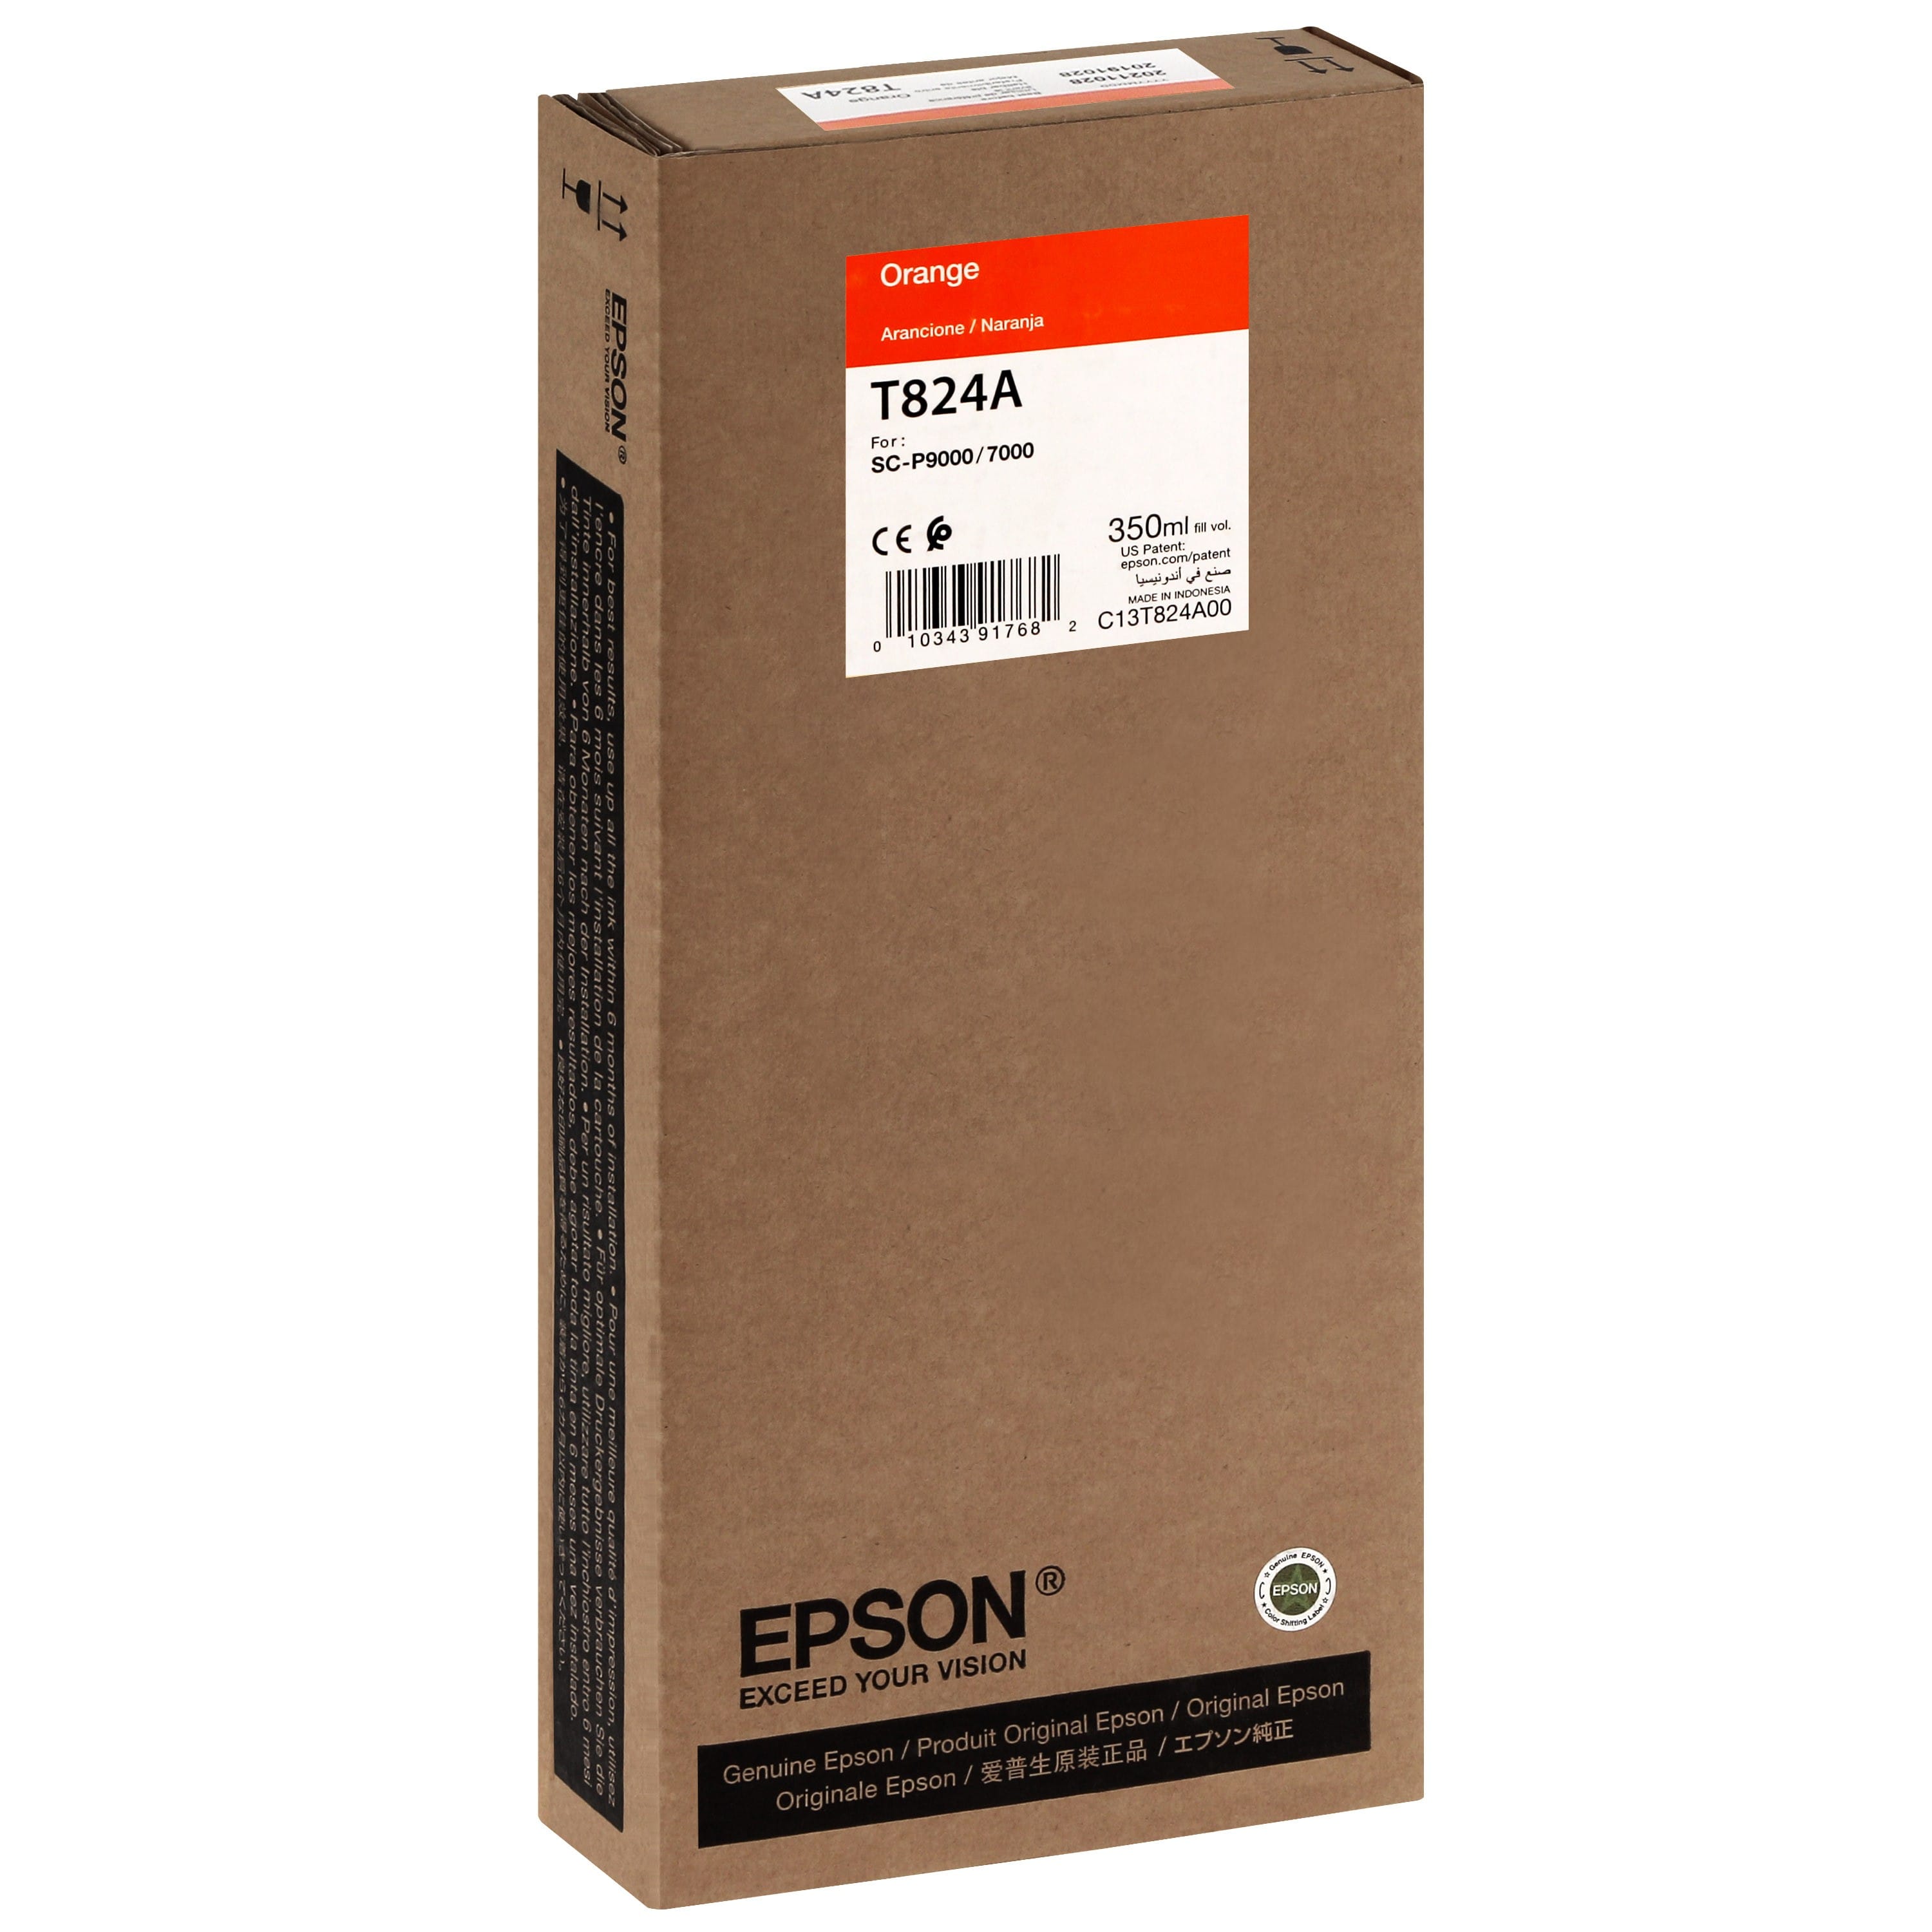 EPSON - Cartouche d'encre traceur T824A Pour imprimante SC-P7000/7000V/9000/9000V Orange - 350ml